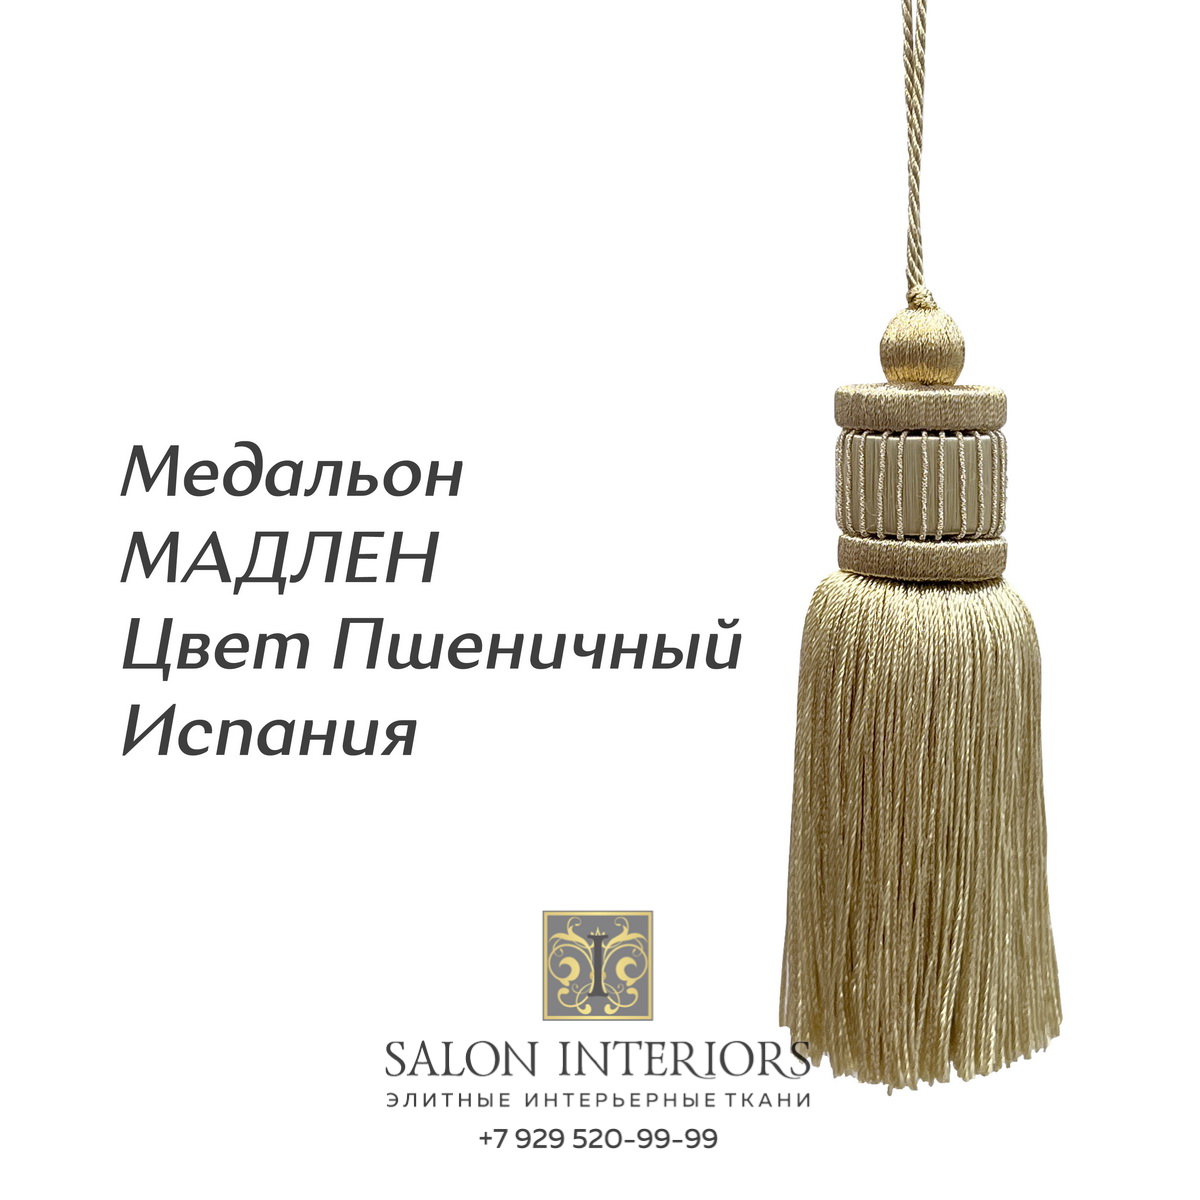 Медальон "МАДЛЕН" Арт MK1052-A8 Цвет Пшеничный Испания